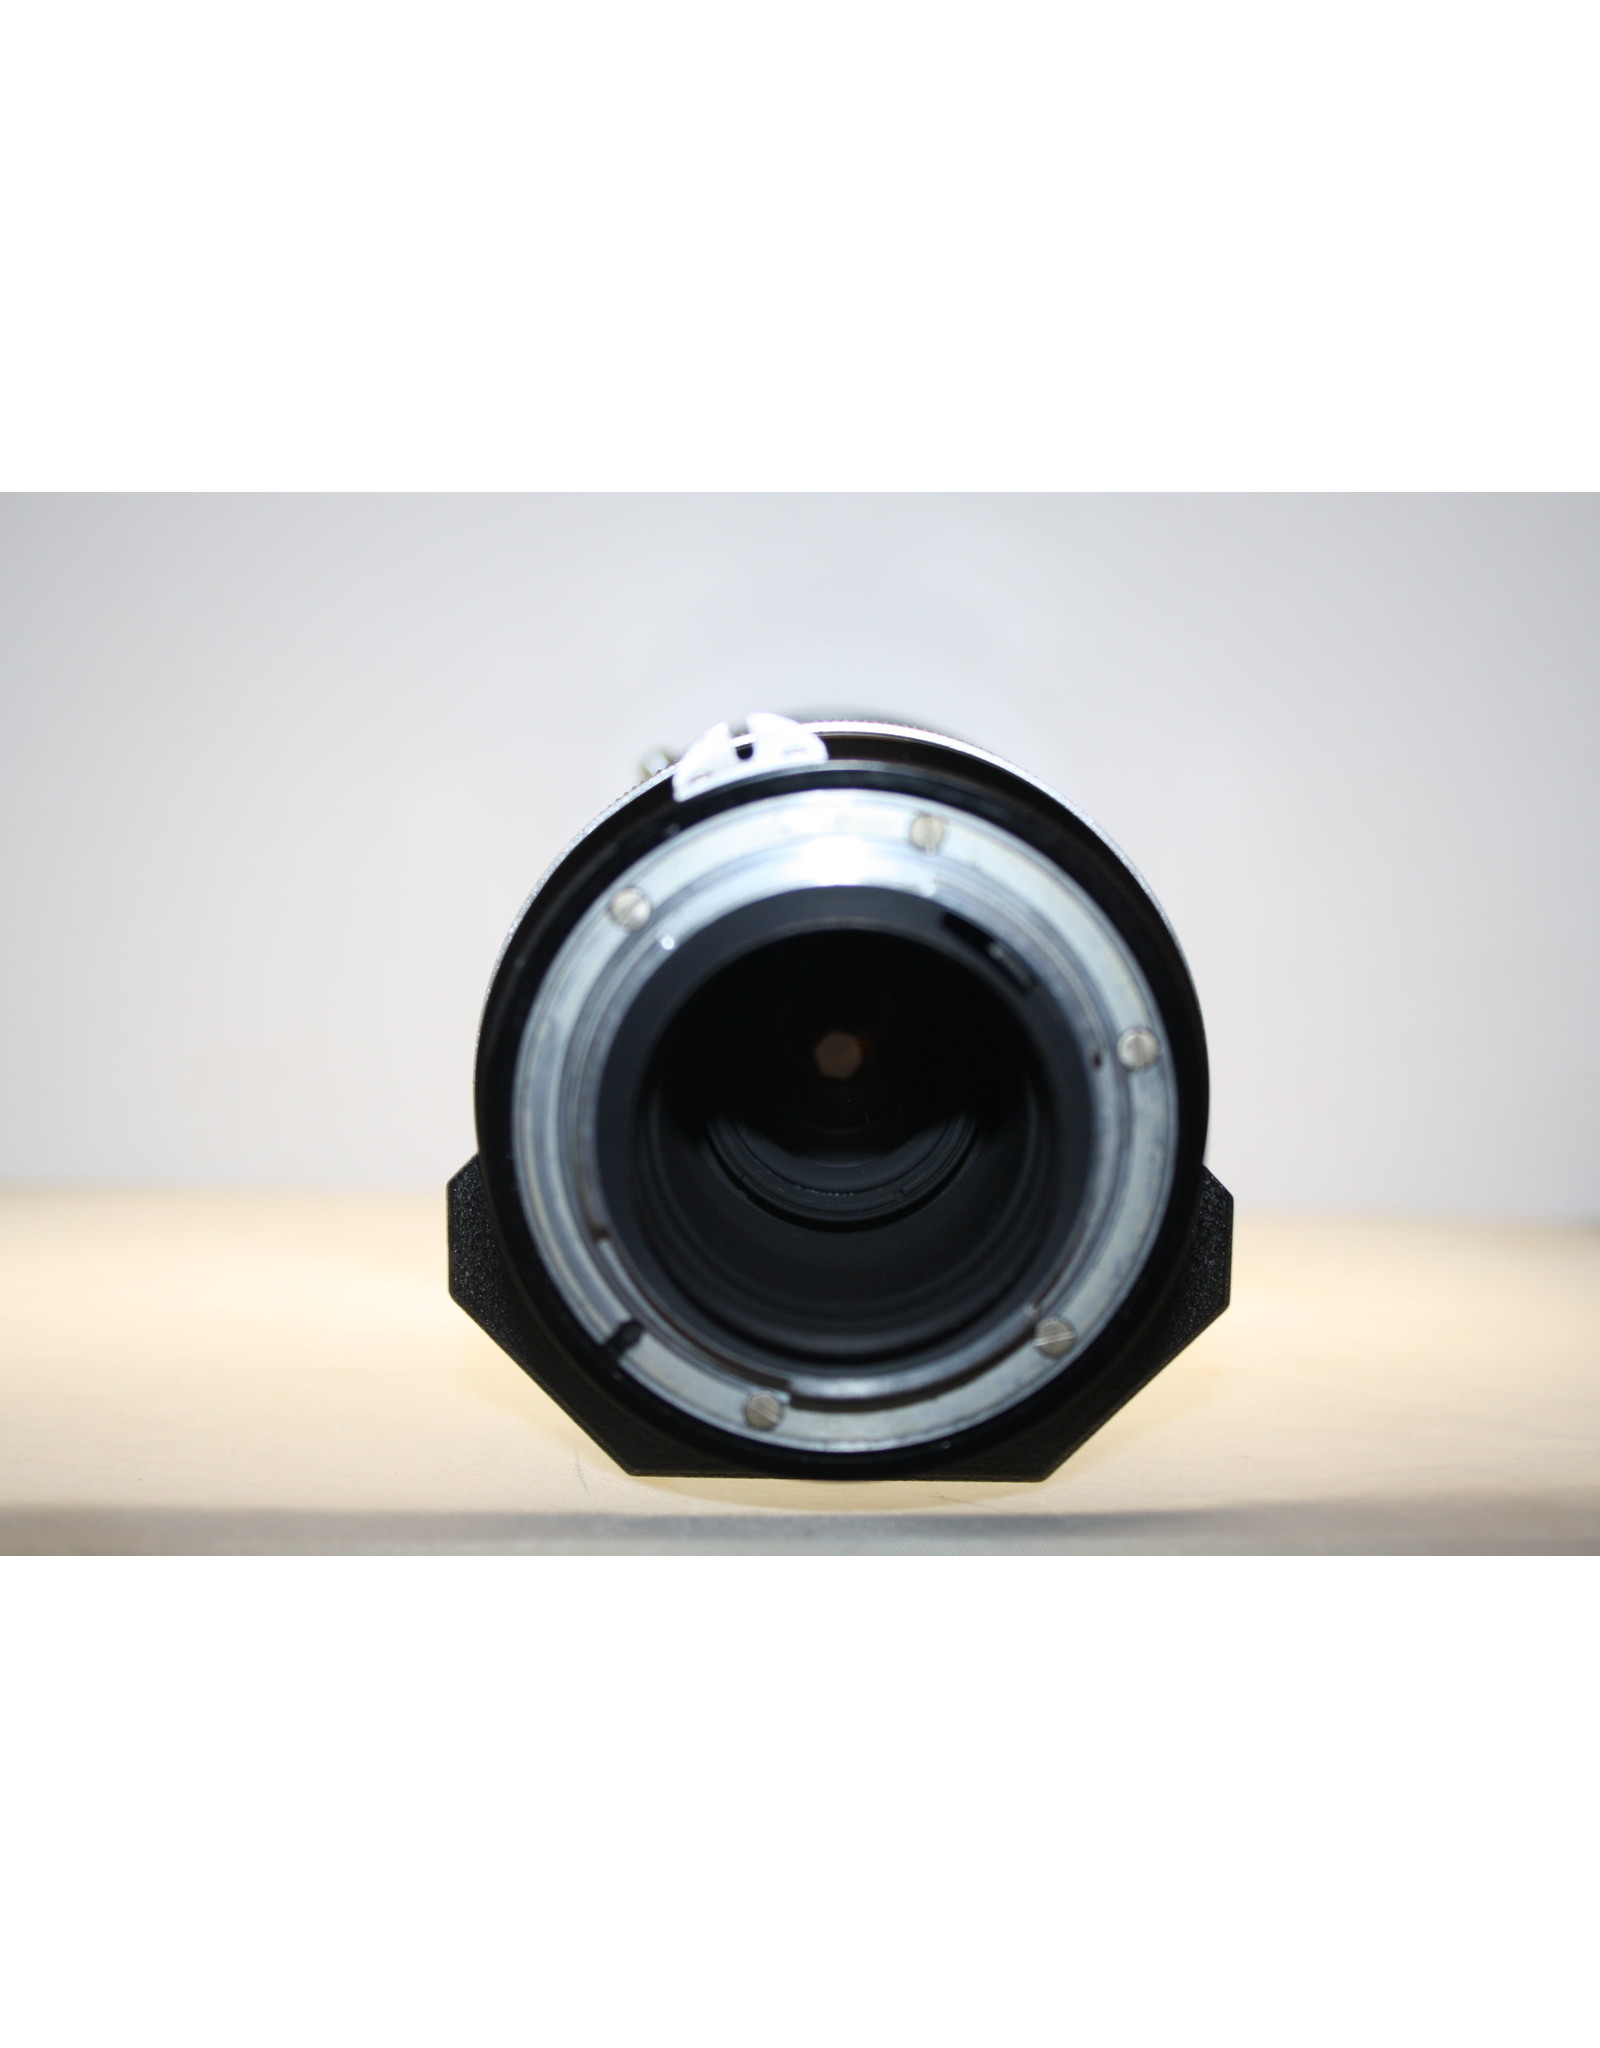 Nikkor-H 300mm f4.5 Lens (Pre-owned)